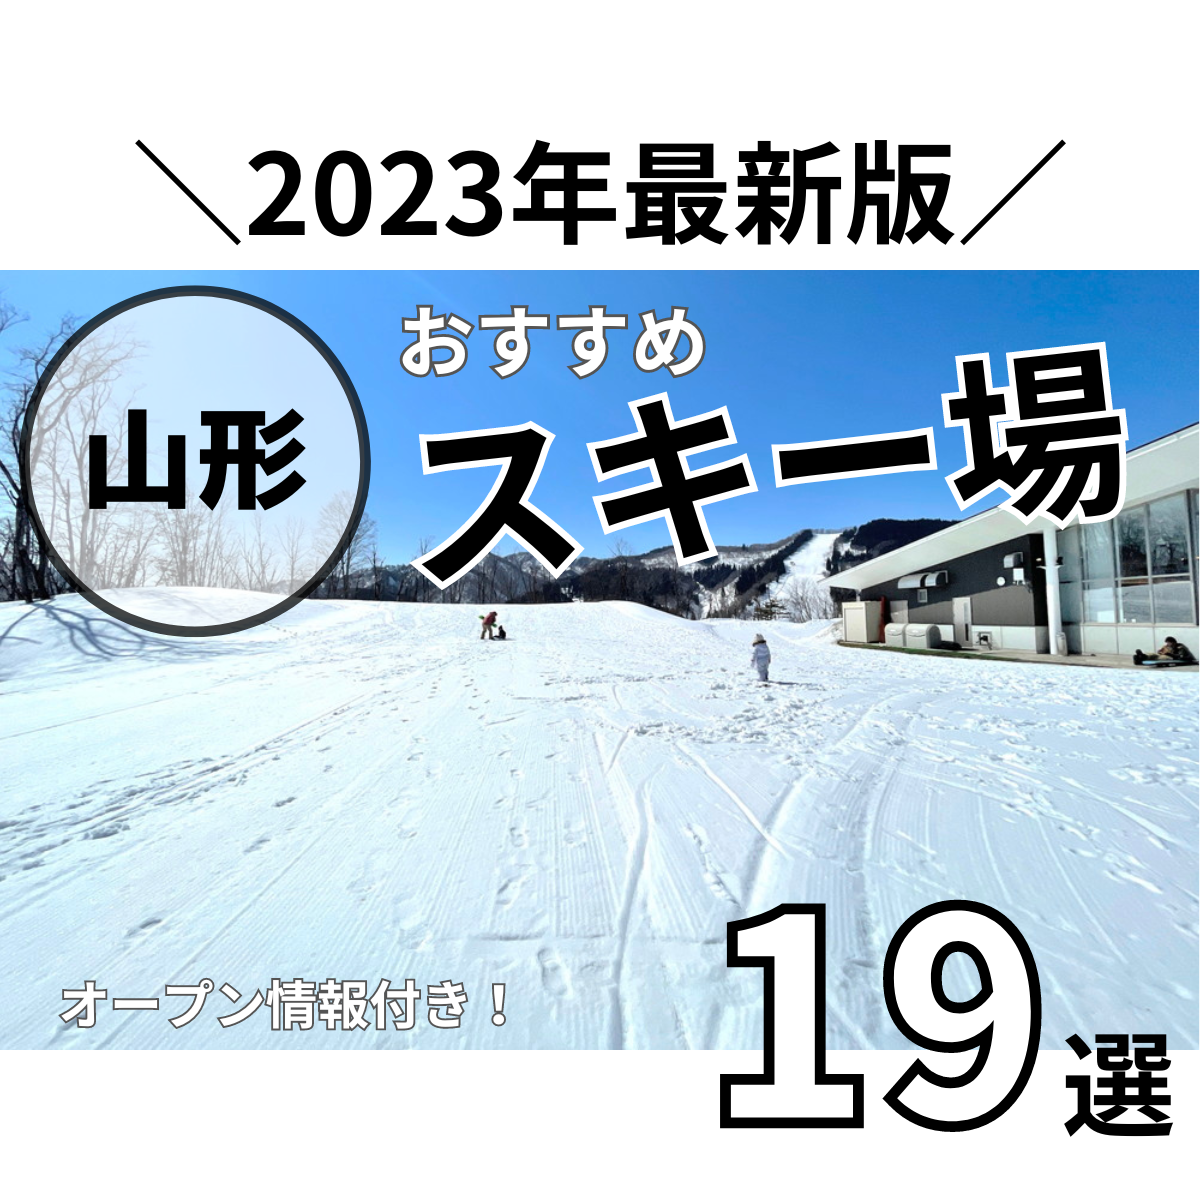 【2023年版】山形のスキー場オープン情報